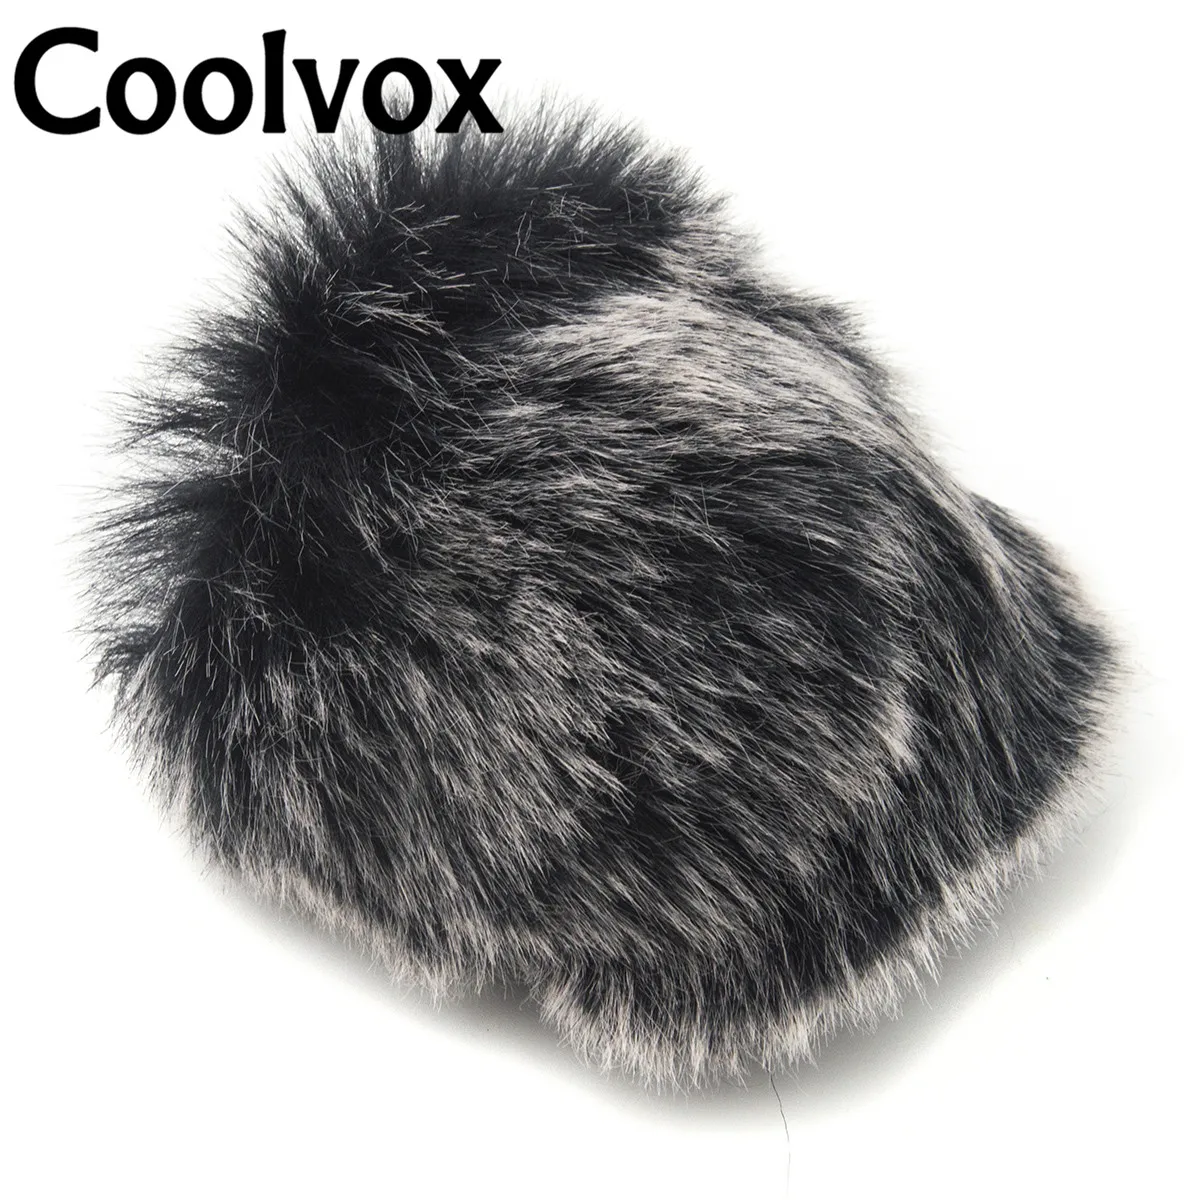 Coolvox общий нормальный микрофон Меховой чехол Ветрозащитный свитер с поролоновой крышкой для круглой головы для шаровой формы караоке микрофон